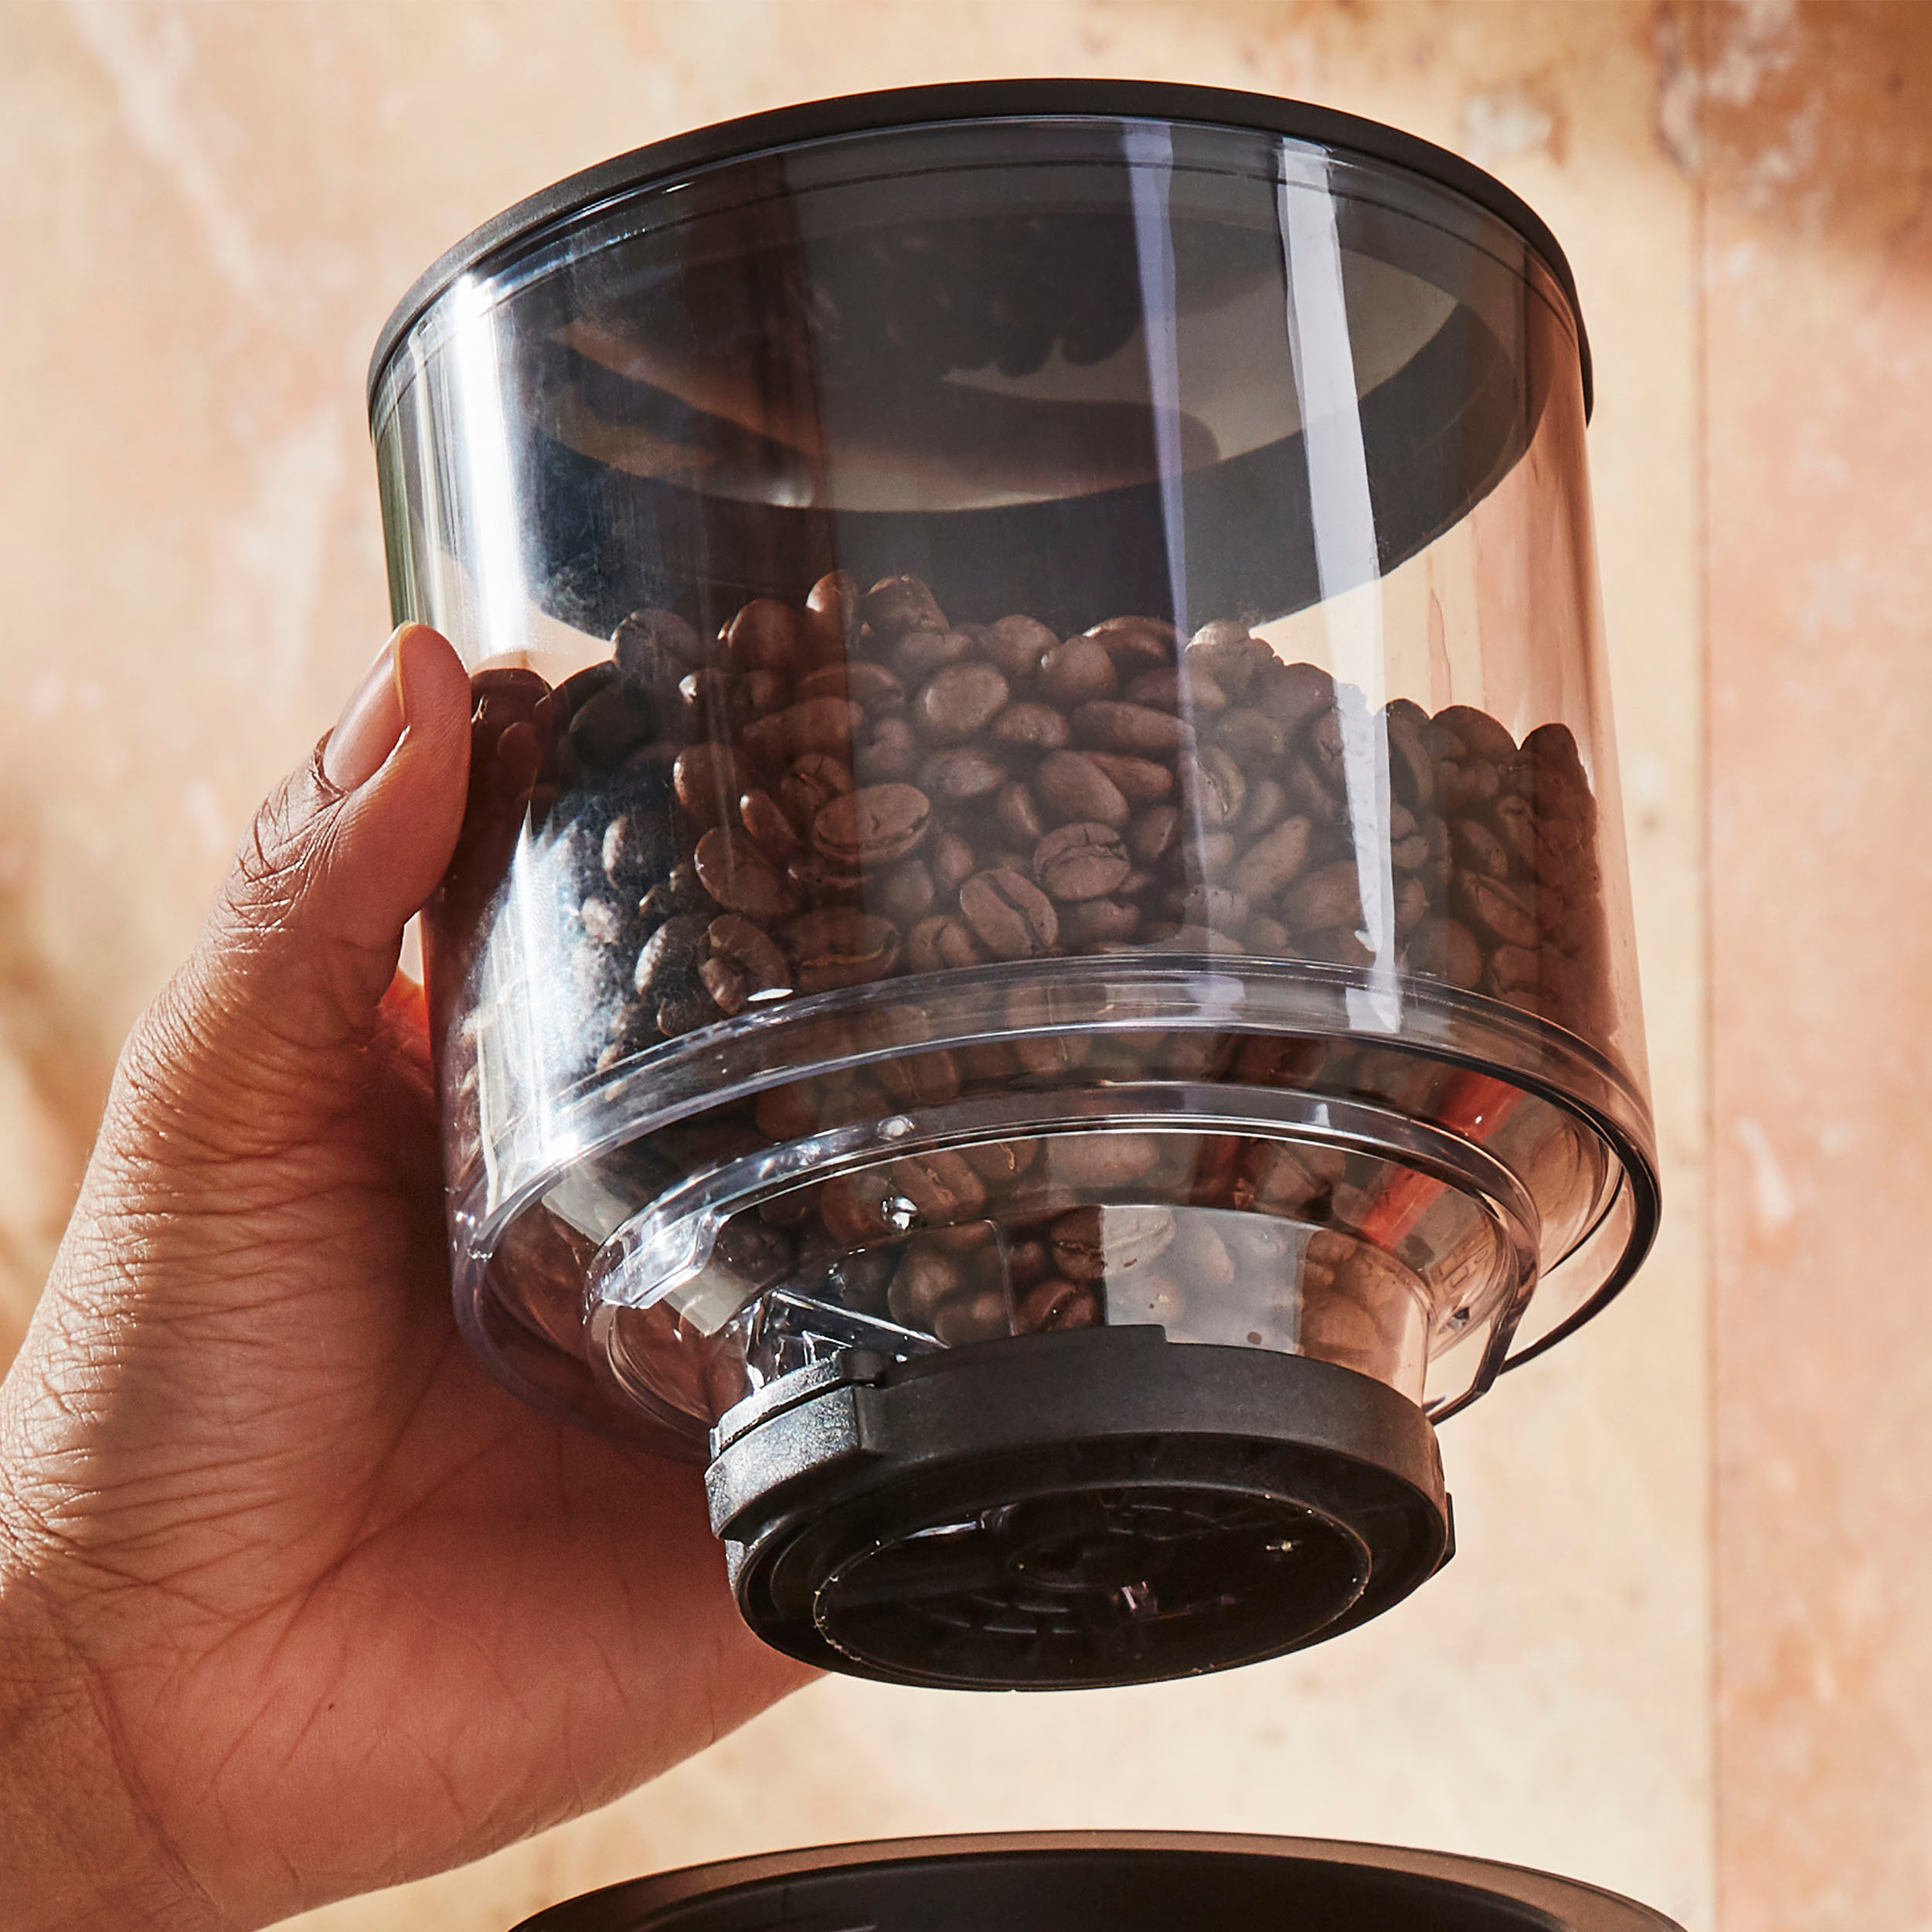 Burr Coffee Grinder Attachment for KitchenAid Stander Mixer